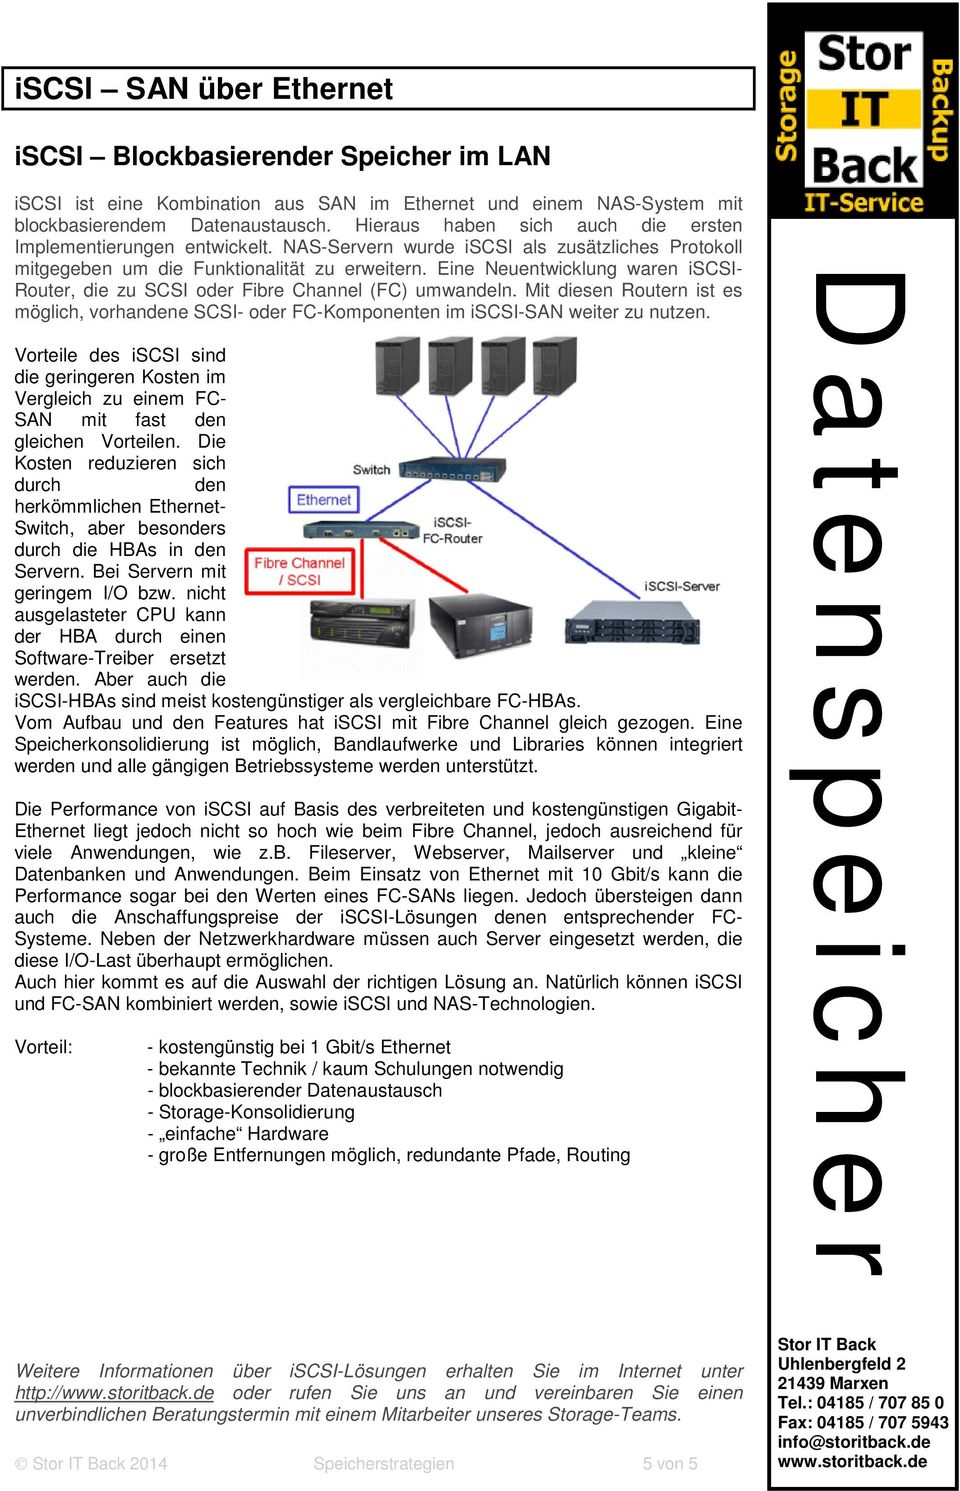 Eine Neuentwicklung waren iscsi- Router, die zu SCSI oder Fibre Channel (FC) umwandeln. Mit diesen Routern ist es möglich, vorhandene SCSI- oder FC-Komponenten im iscsi-san weiter zu nutzen.